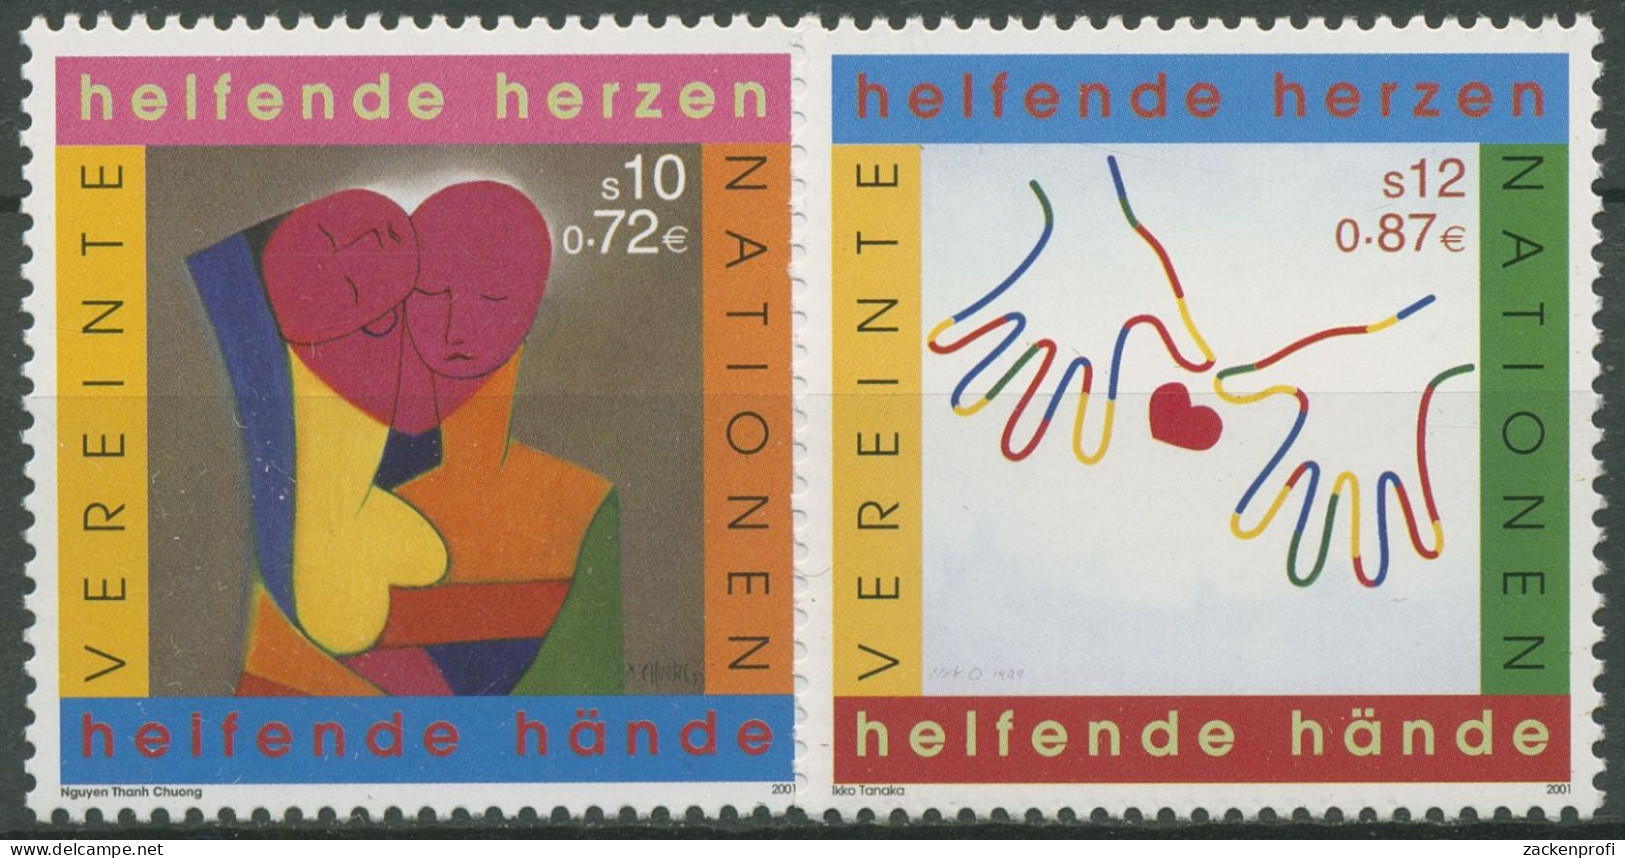 UNO Wien 2001 Jahr Des Ehrenamtes Gemälde 331/32 Postfrisch - Unused Stamps